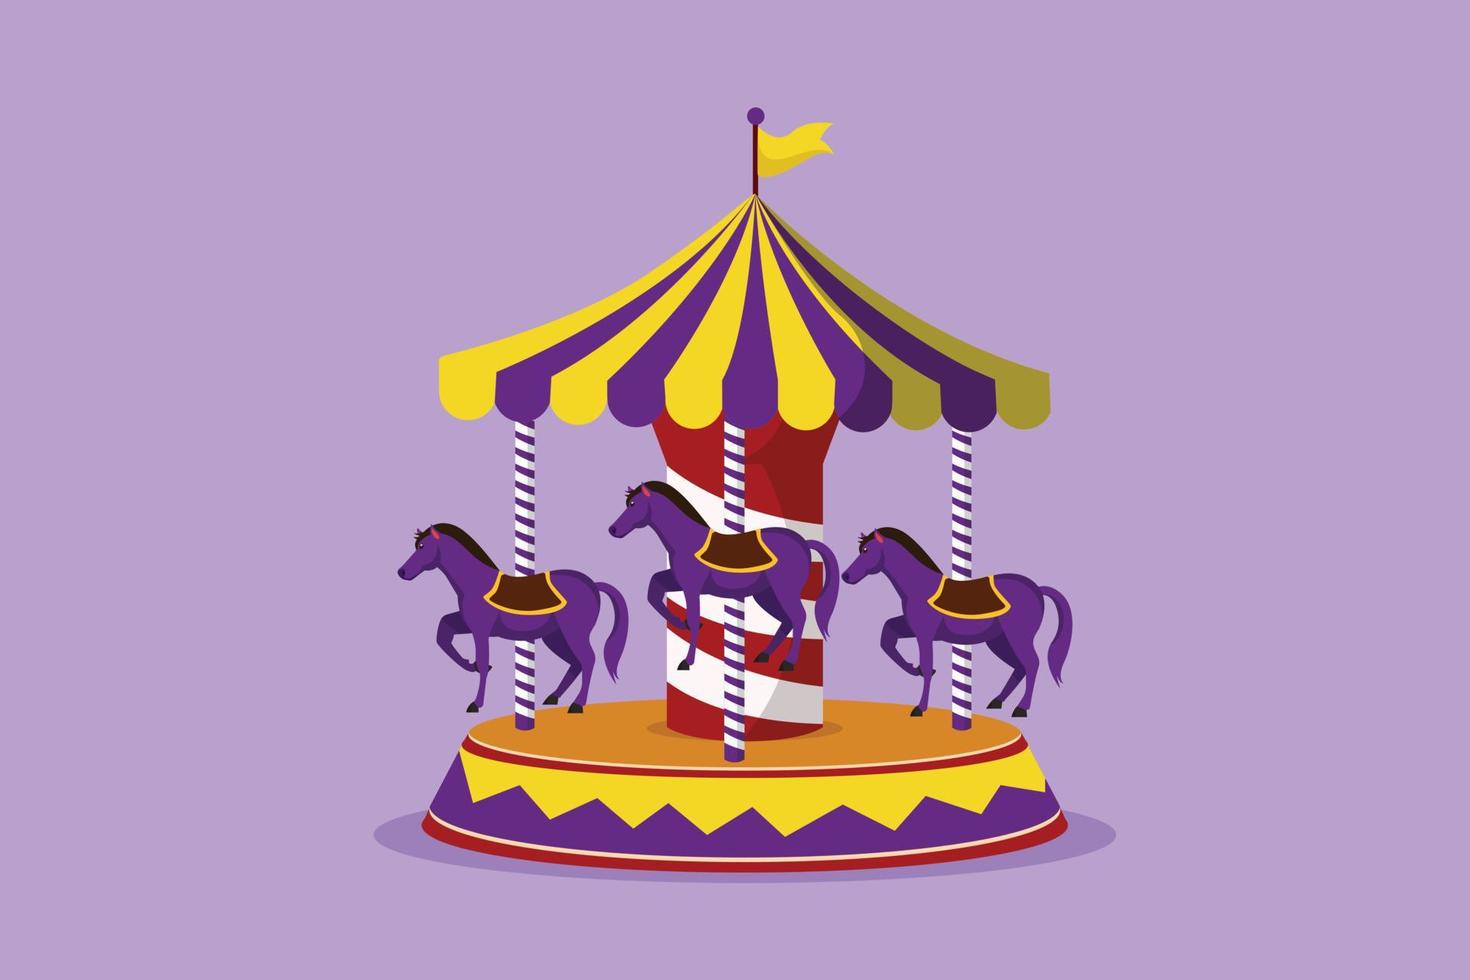 charakterflache zeichnung eines bunten pferdekarussells im vergnügungspark mit pferden, die sich unter dem zelt mit flagge drehen. glückliche Kindheit. spielen auf Kirmes Outdoor-Festival. Cartoon-Design-Vektor-Illustration vektor